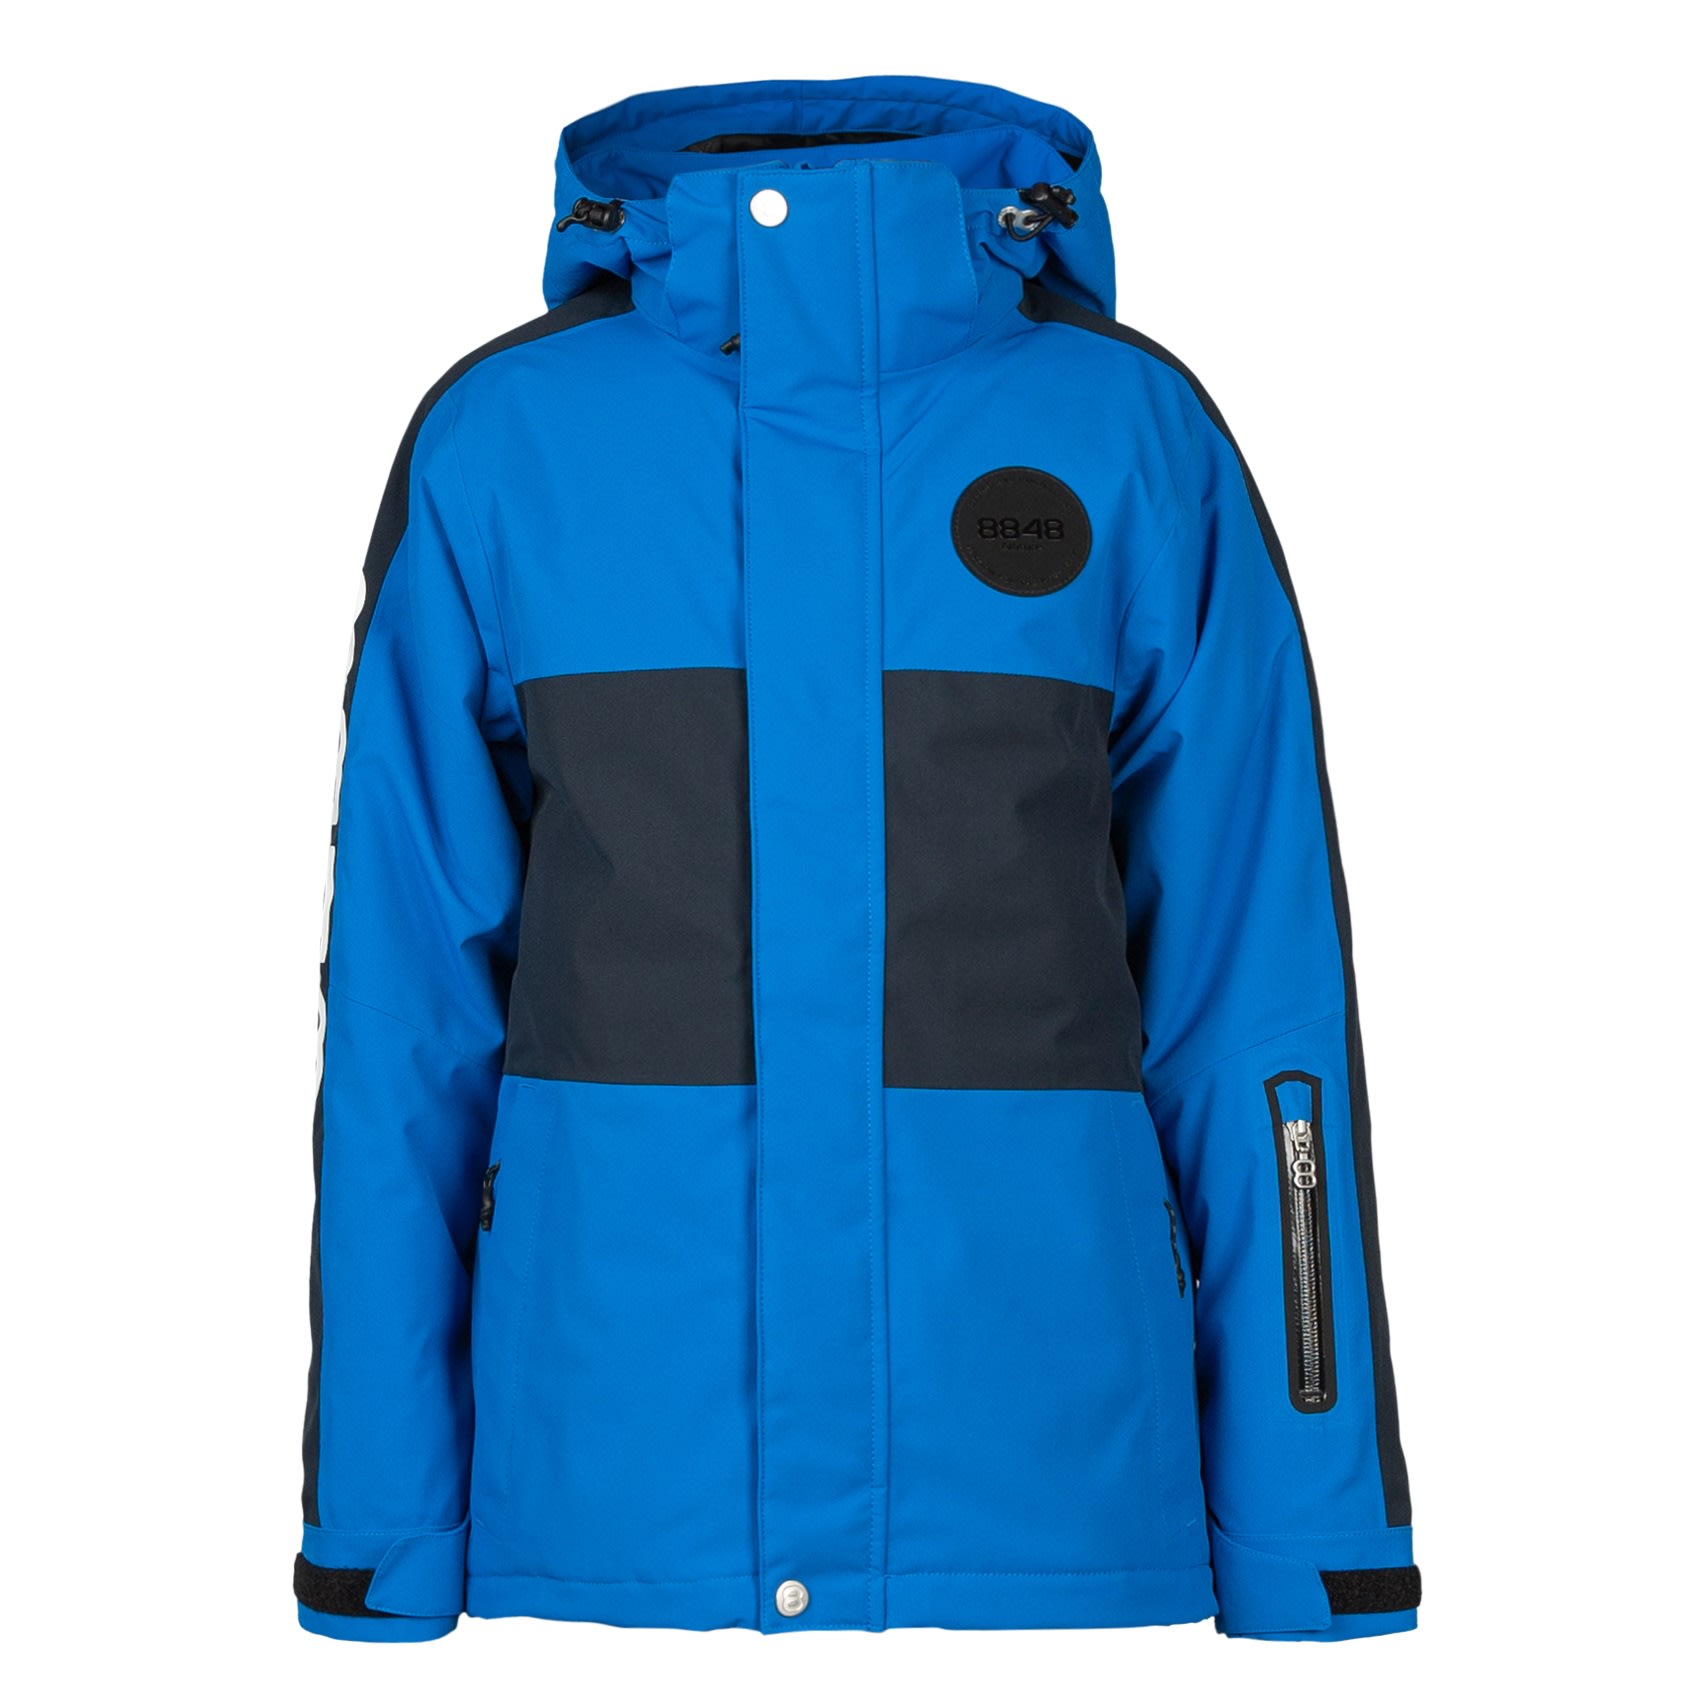 Mark Læring par Buy 8848 Altitude Junior's Kingston Jacket from Outnorth